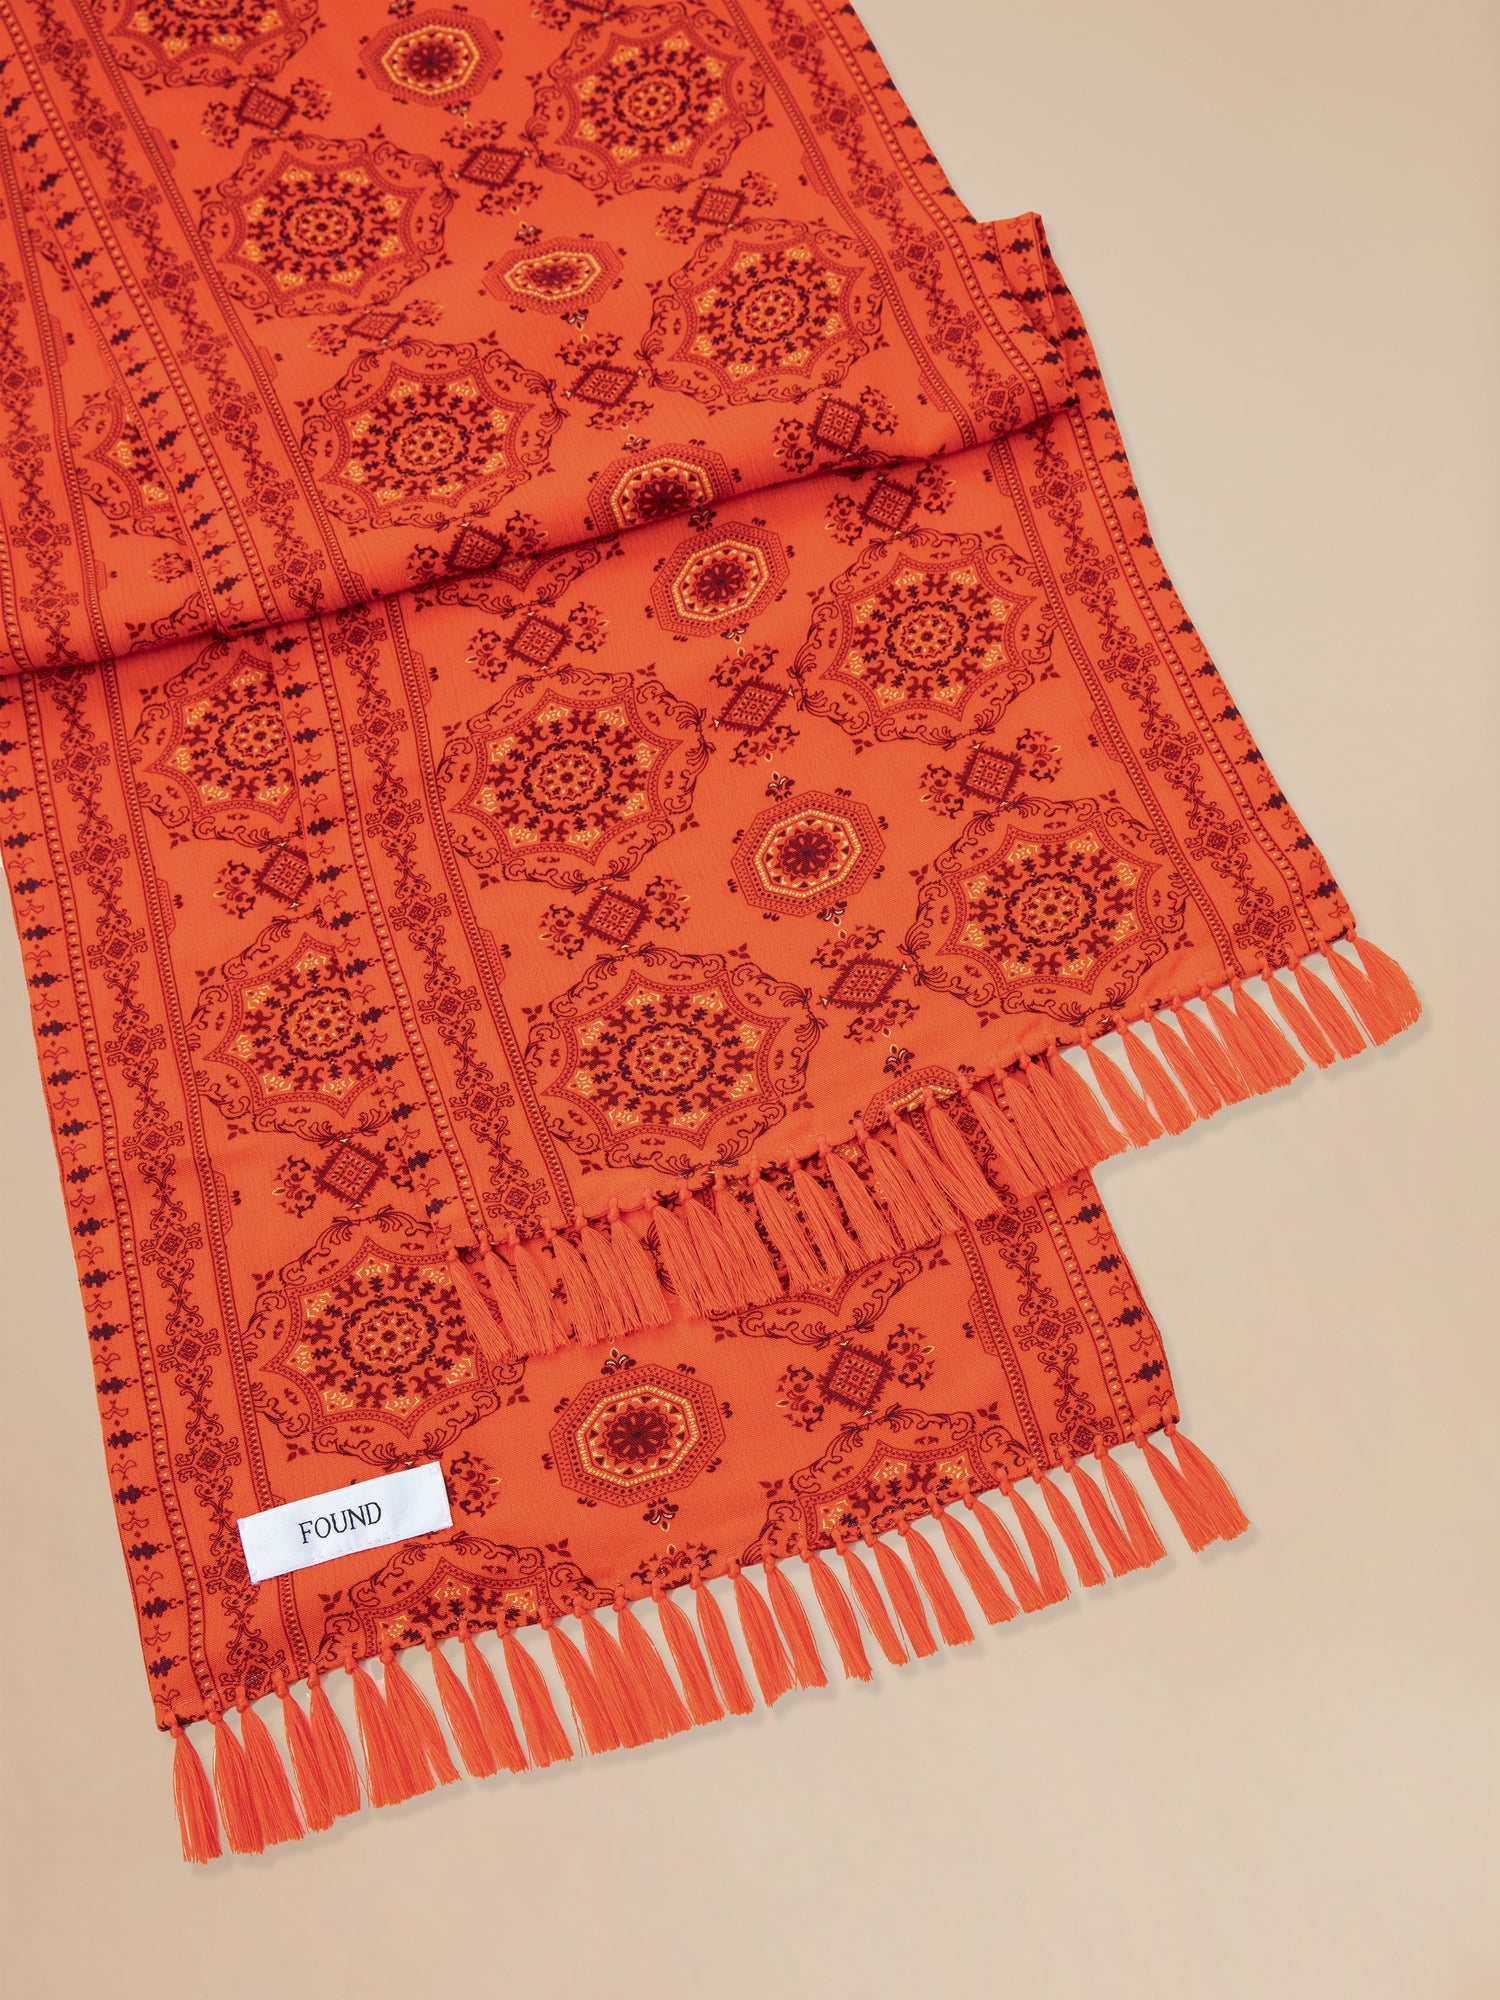 An orange Found Grenadine scarf with hand-tied tassels.